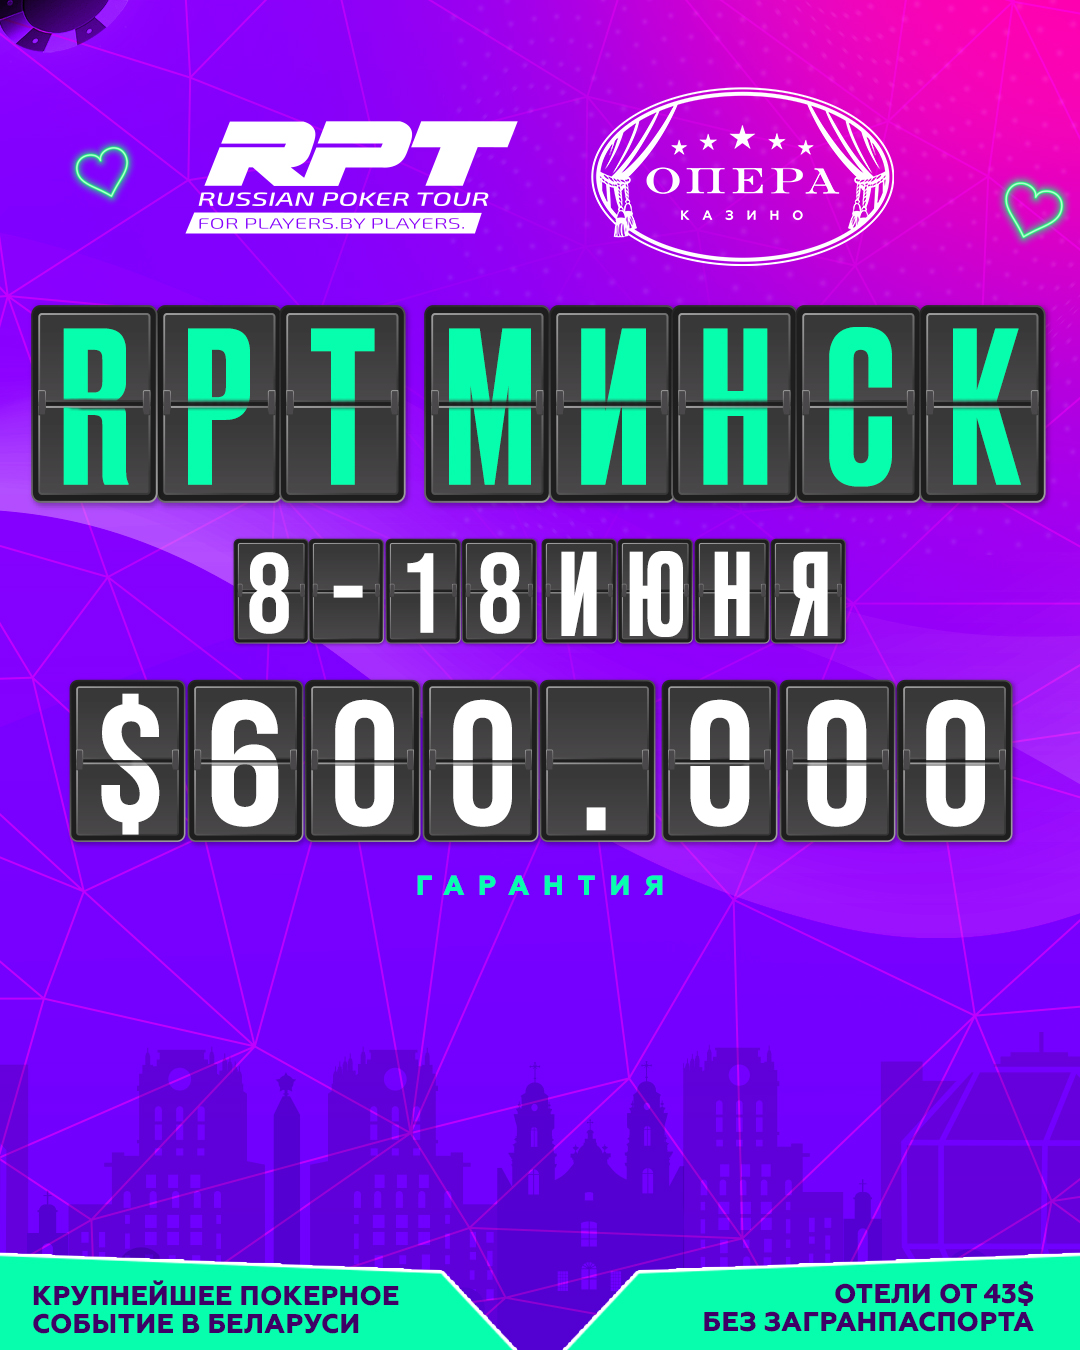 RUSSIAN POKER TOUR | MINSK, 8 - 18 JUNE 2023 | $600.000 GTD